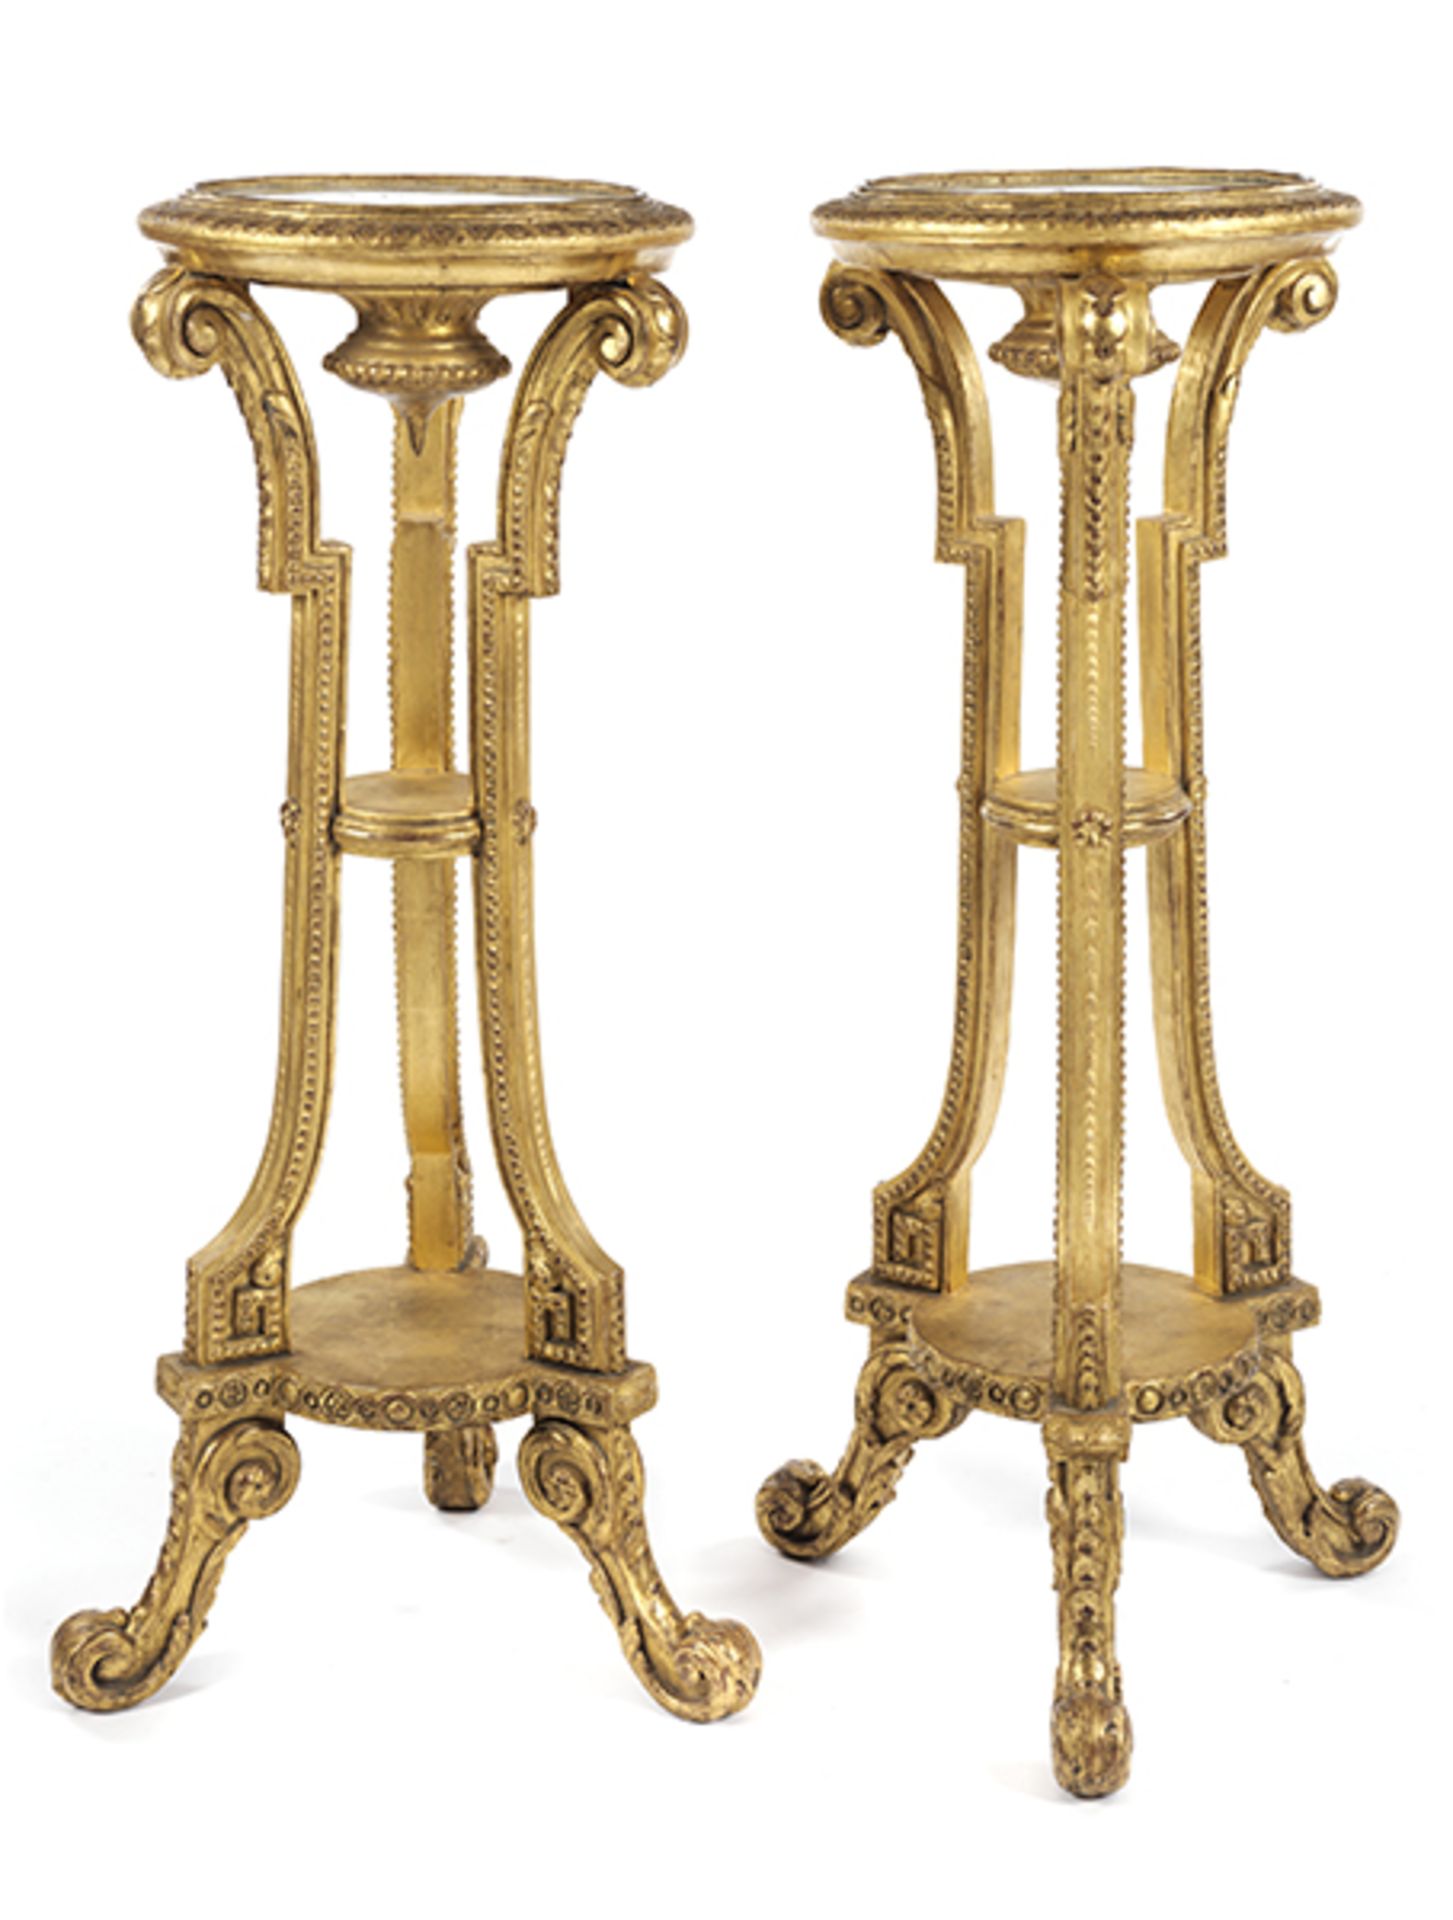 Paar Louis XVI-Torchèren Höhe: 105,5 cm. Durchmesser: 37,5 cm. Weichholz, geschnitzt, vergoldet. Auf